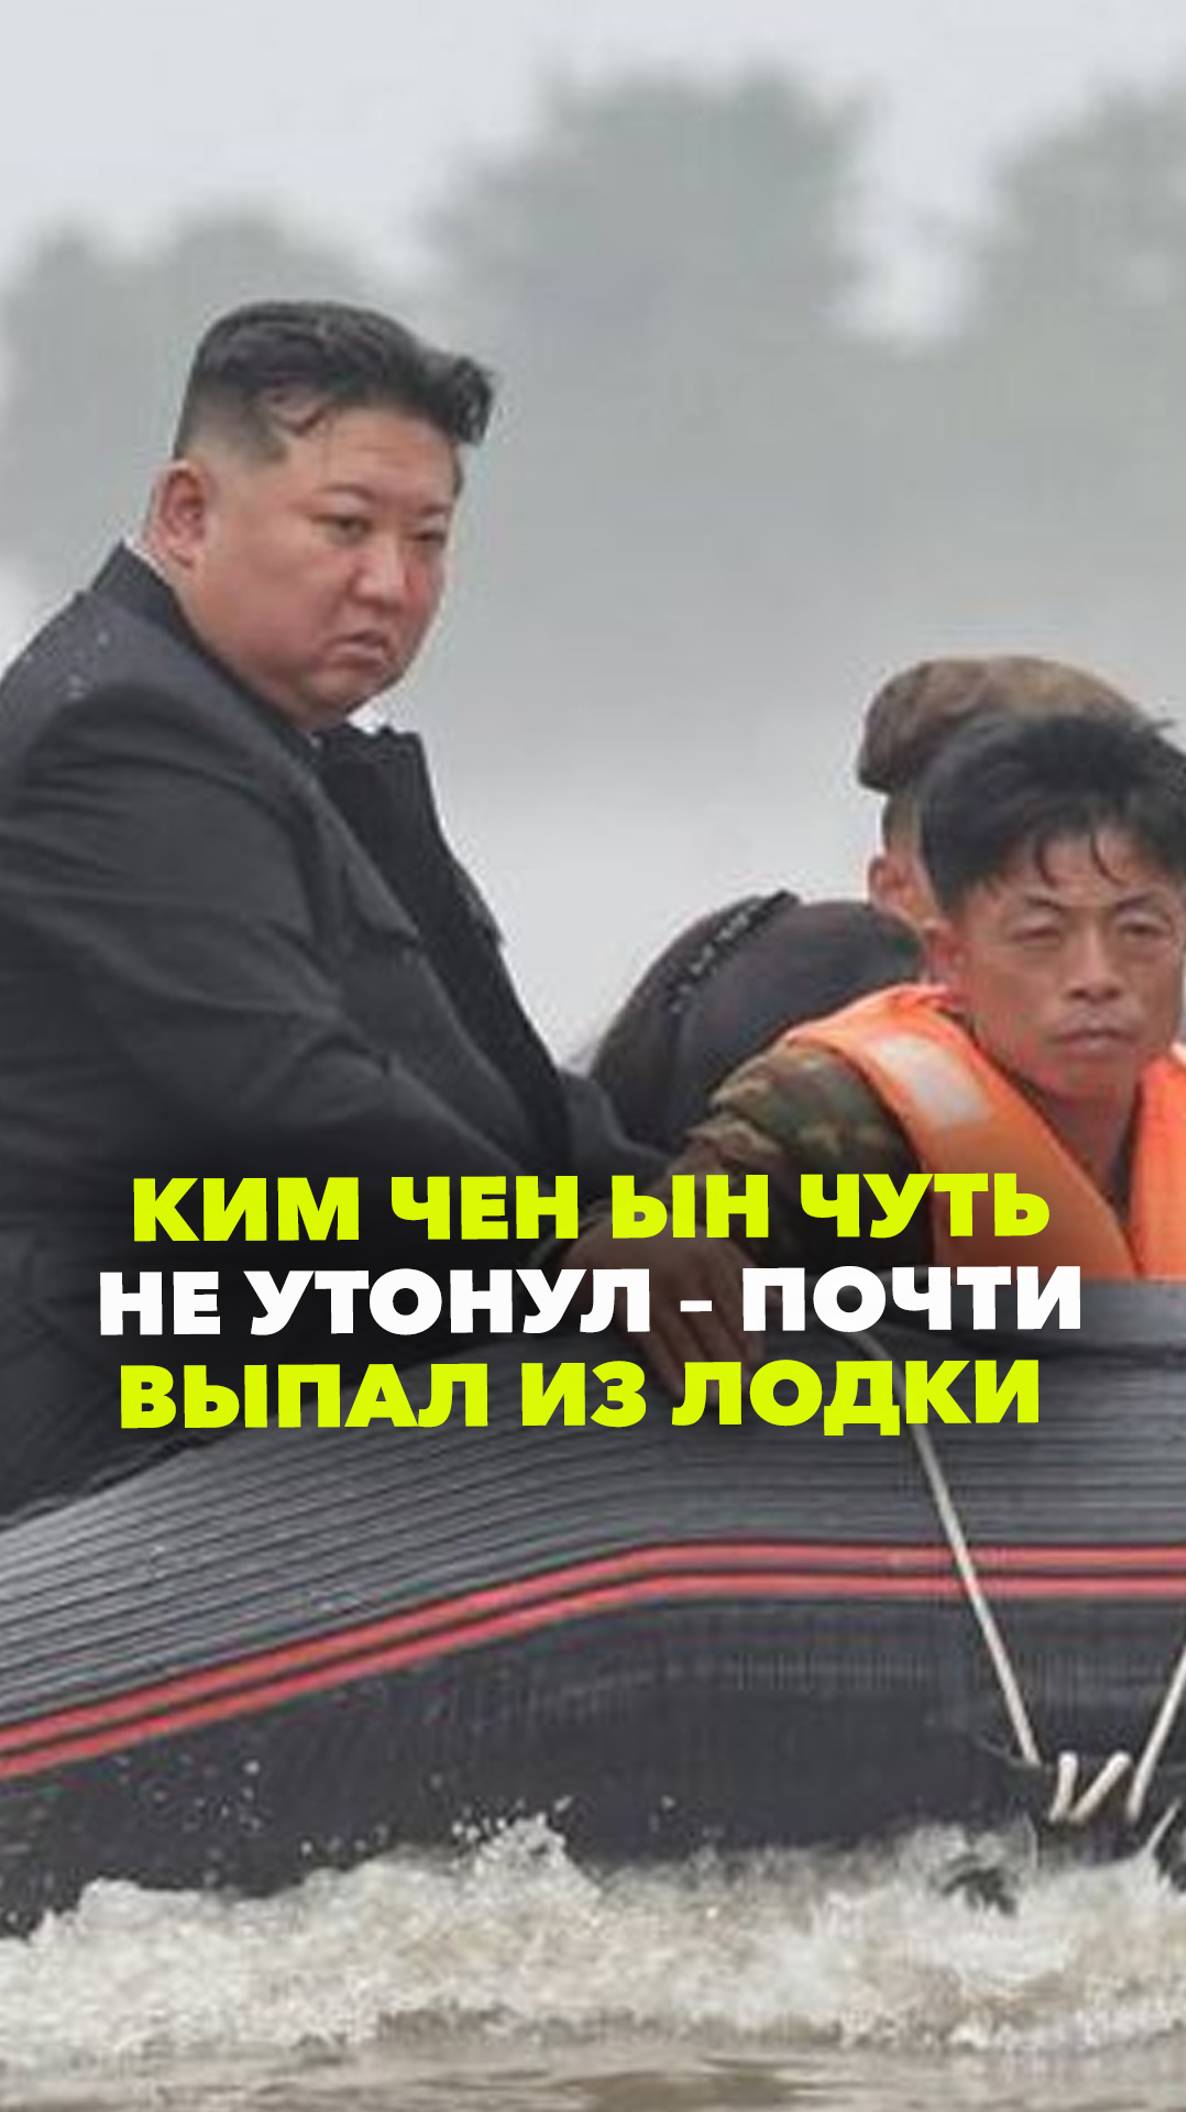 Ким Чен Ын чуть не утонул. Он едва не вывалился из лодки, осматривая районы